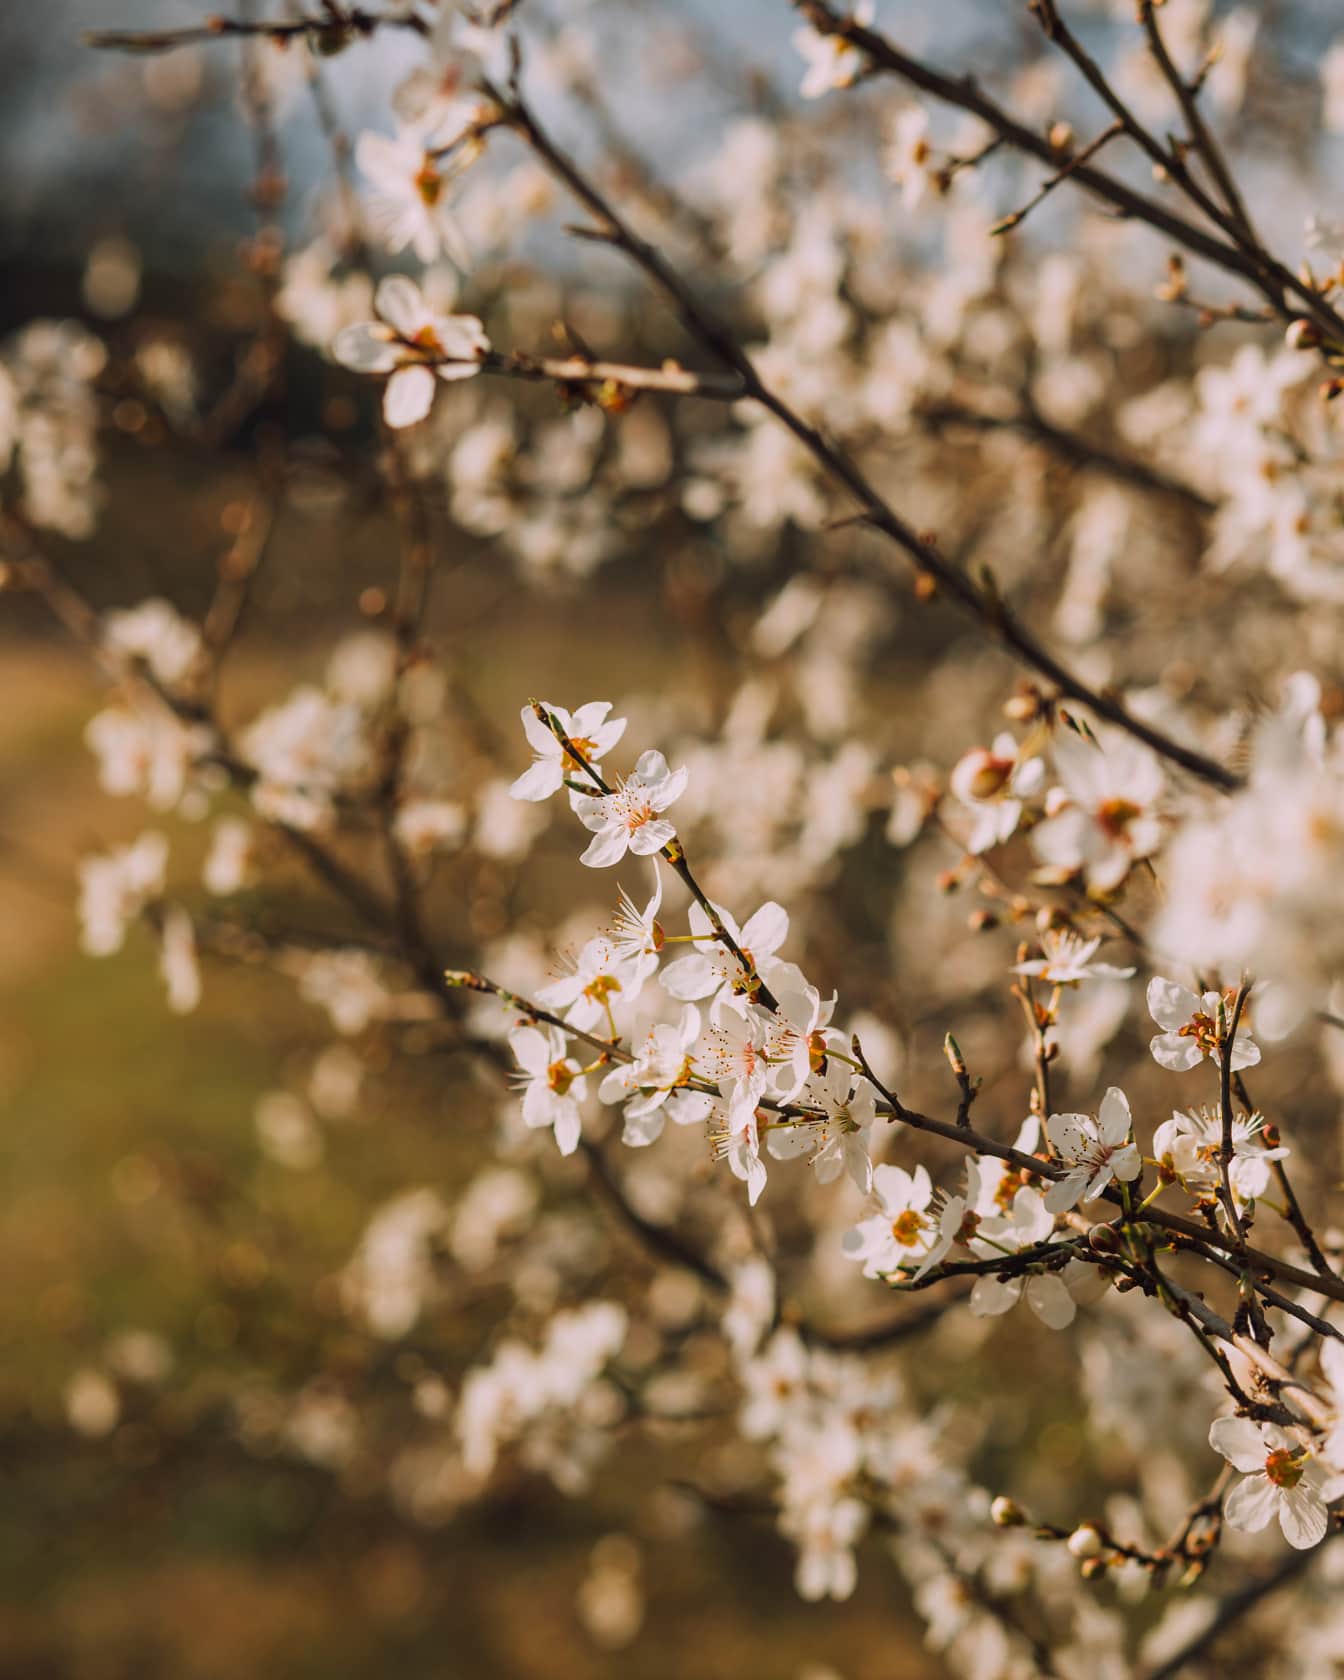 Piccoli fiori bianchi sui rami nel frutteto in primavera